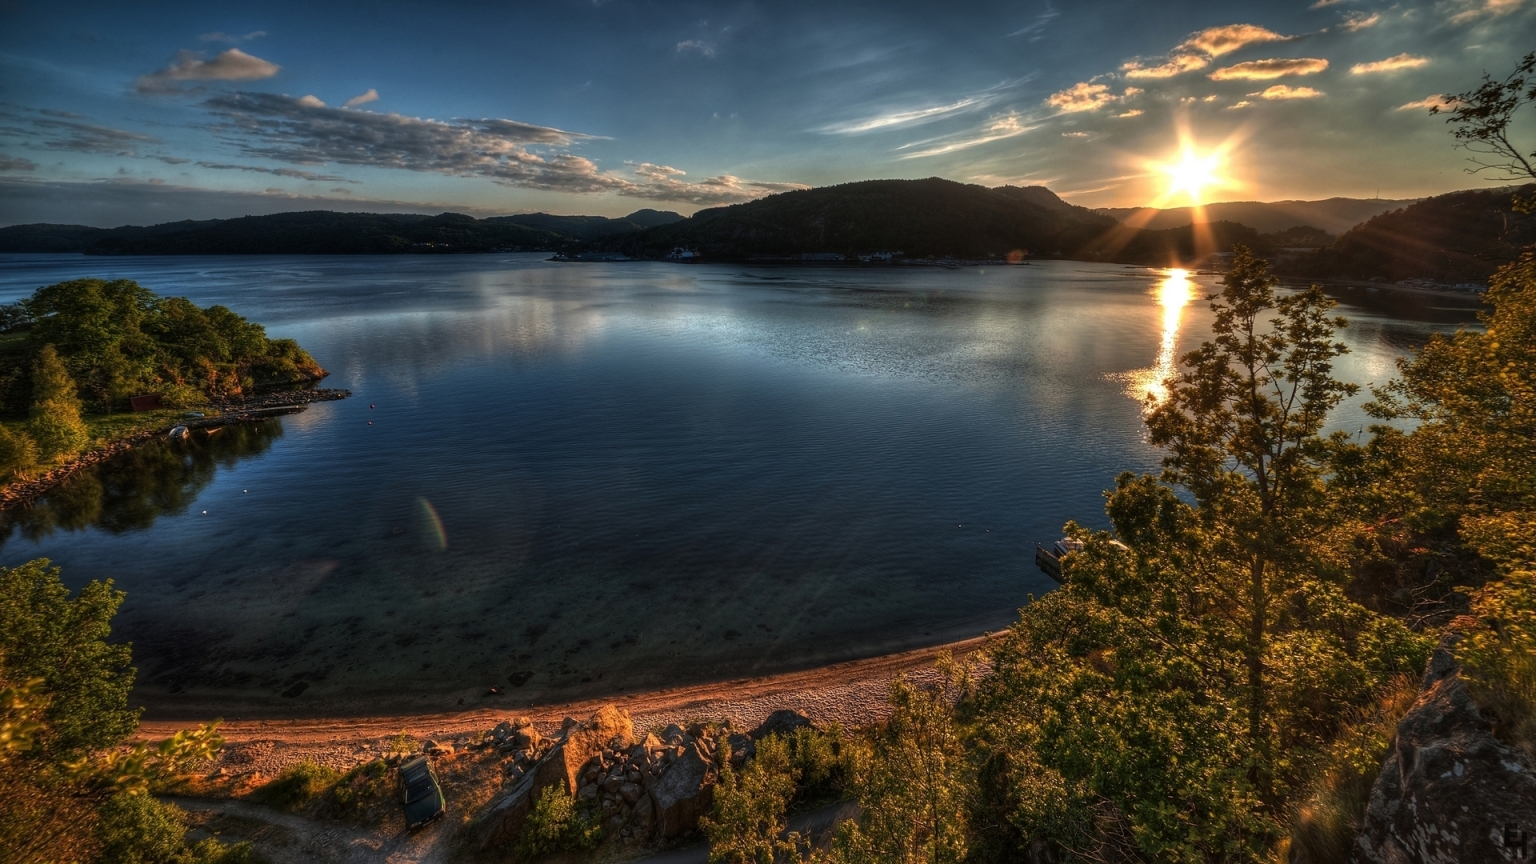 Stunning Lake Sunset for 1536 x 864 HDTV resolution